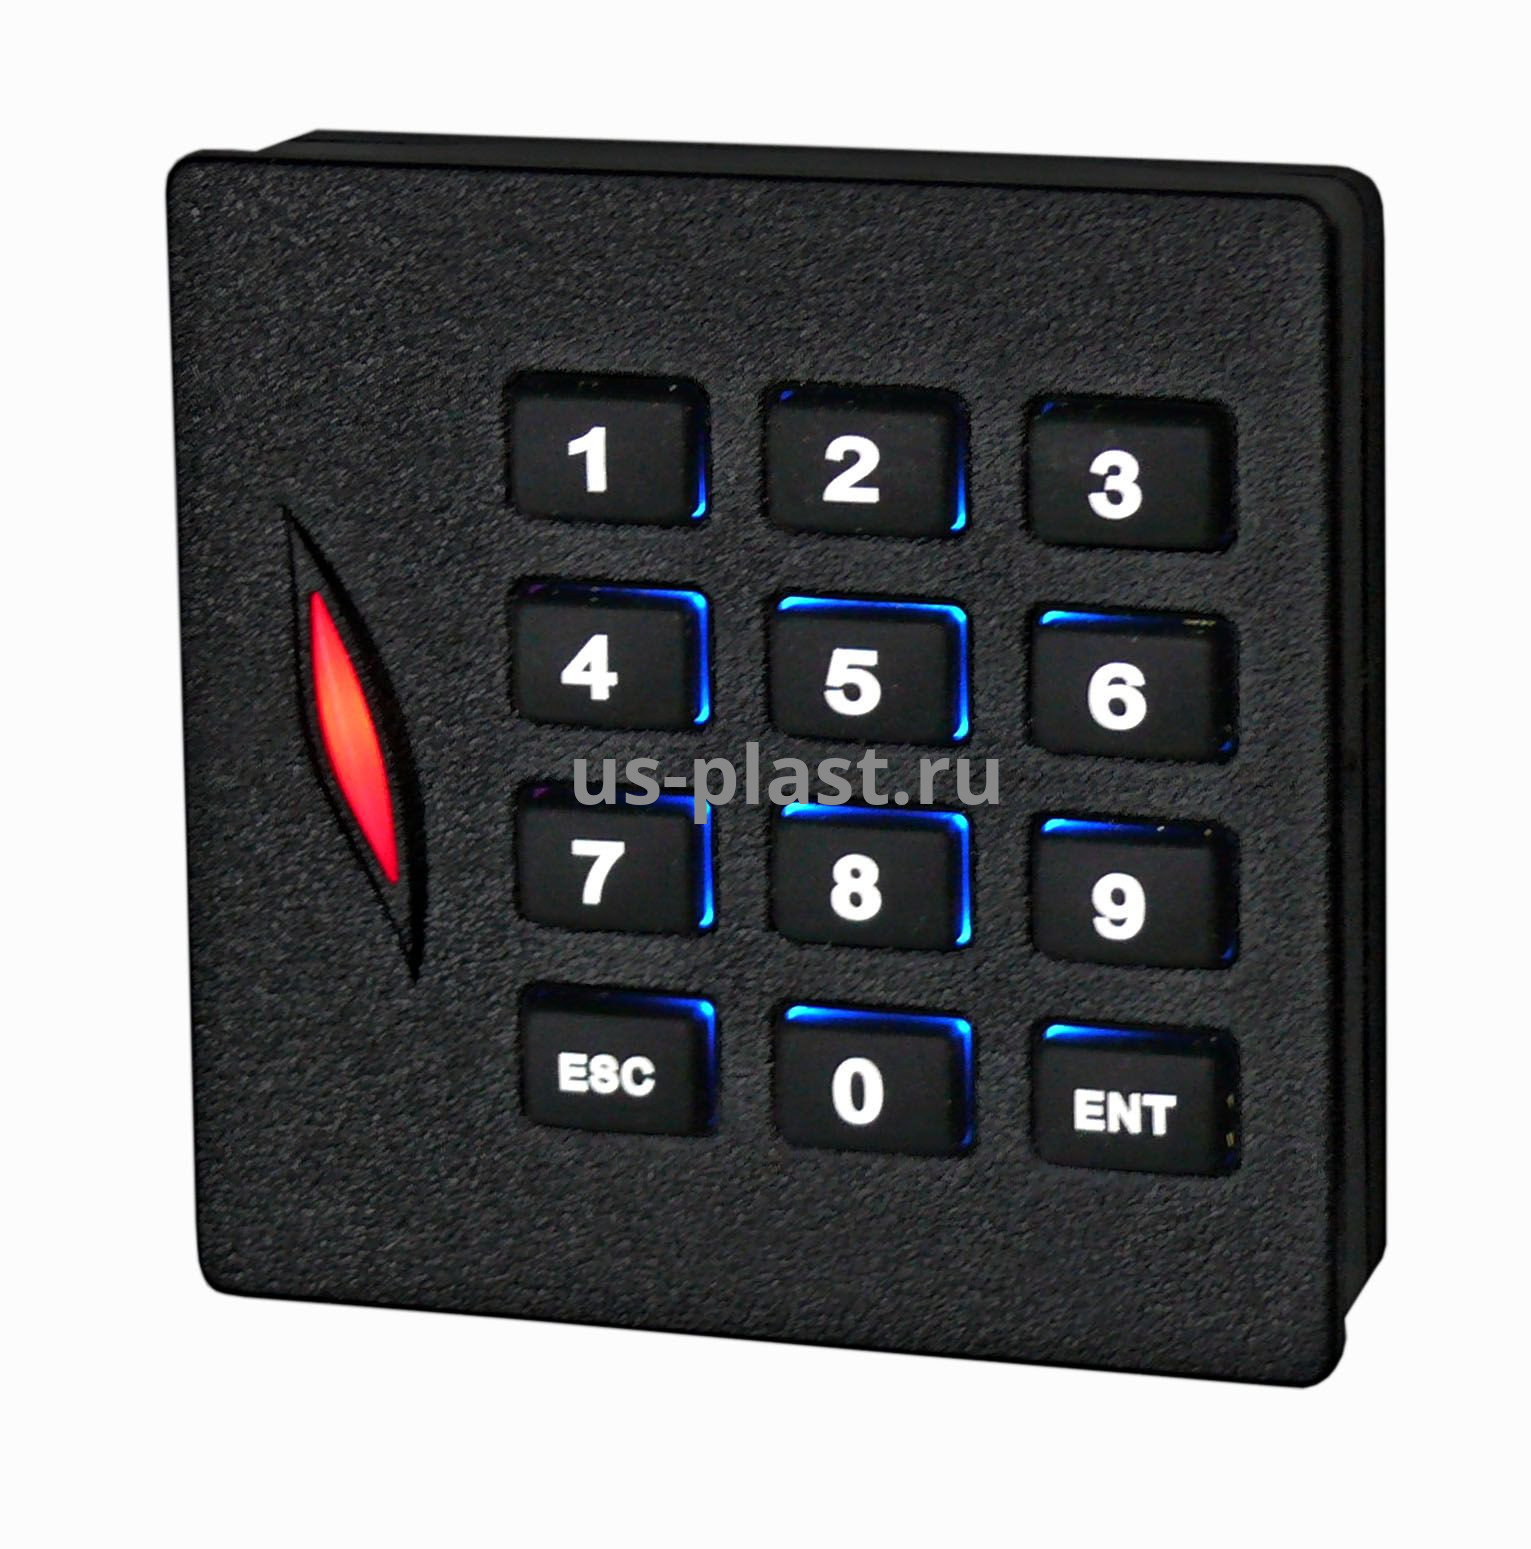 ST-PR160EK, считыватель проксимити карт EM-Marine антивандальный с клавиатурой